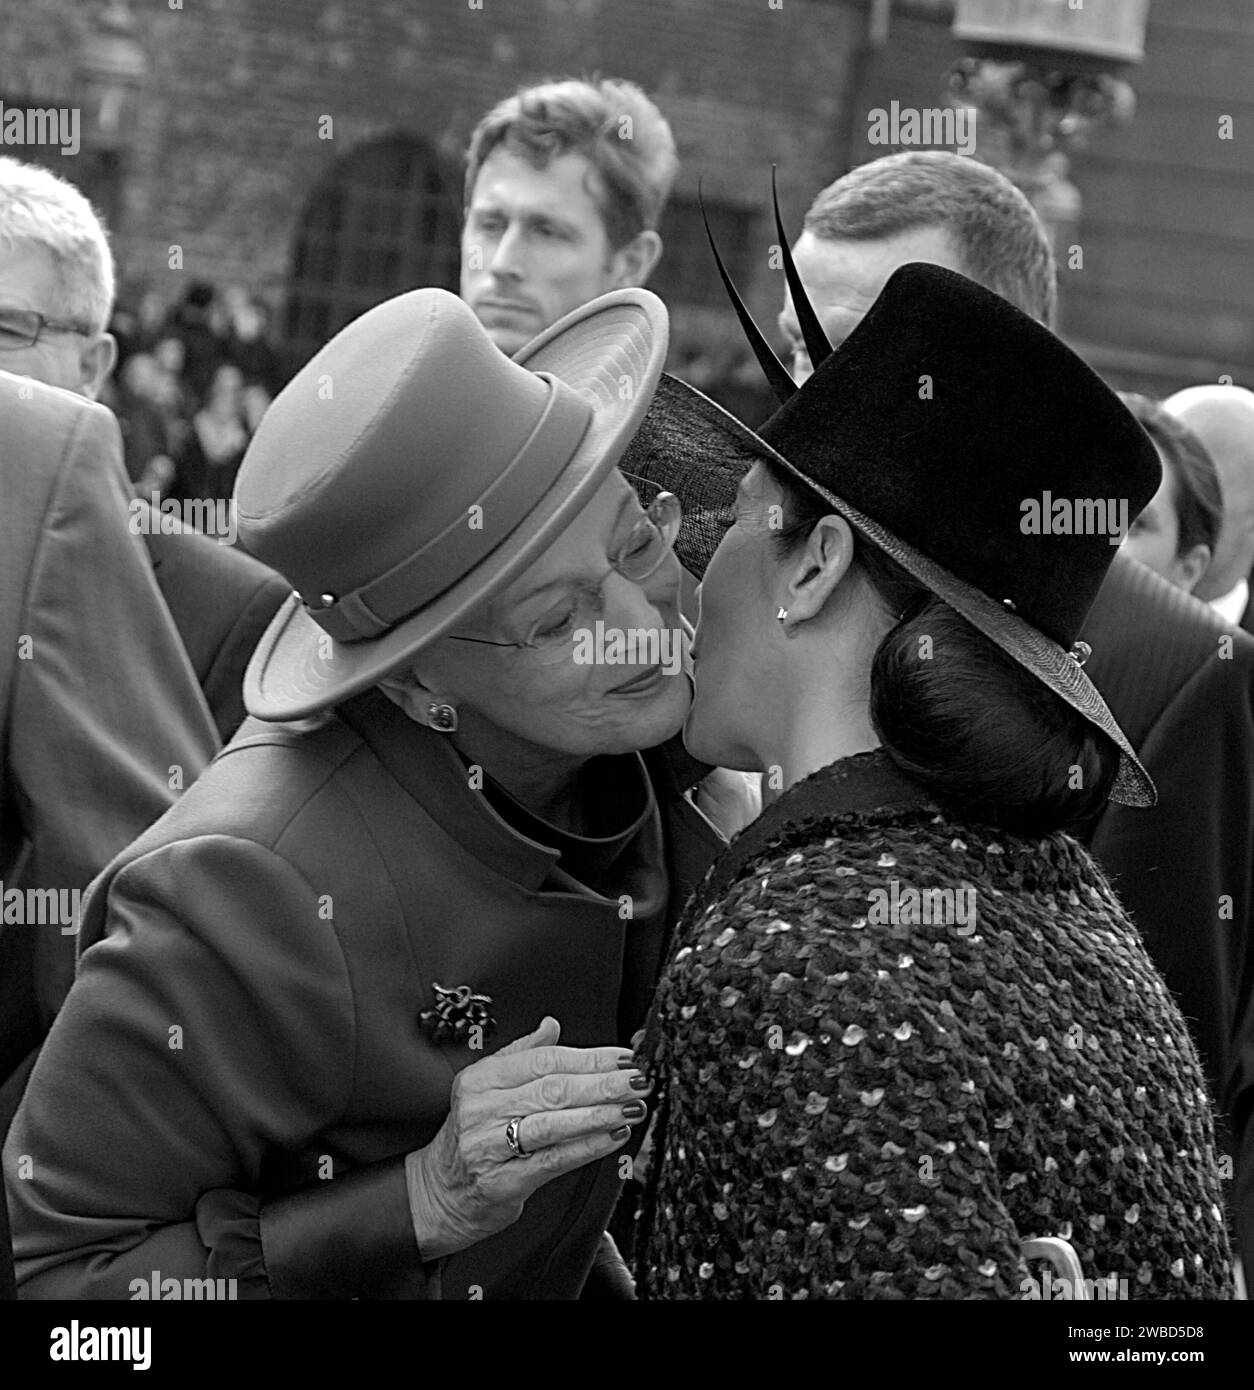 DANEMARK / COPENHAGUE .famille royale danoise S.M. la Reine Margrethe II, son mari le prince Henrik de Danemark, Cornw le prince frederik et la Couronne princesse Marie, Prince joachim et princesse Marie et reine sœur princesse Benedikte arrive à l'ouverture de la vie politique danoise danois Parlement aujourd'hui mardi 5 octobre 2010 PHOTO DE FRANCIS JOSEPH DEAN / DEAN PICTURES Banque D'Images